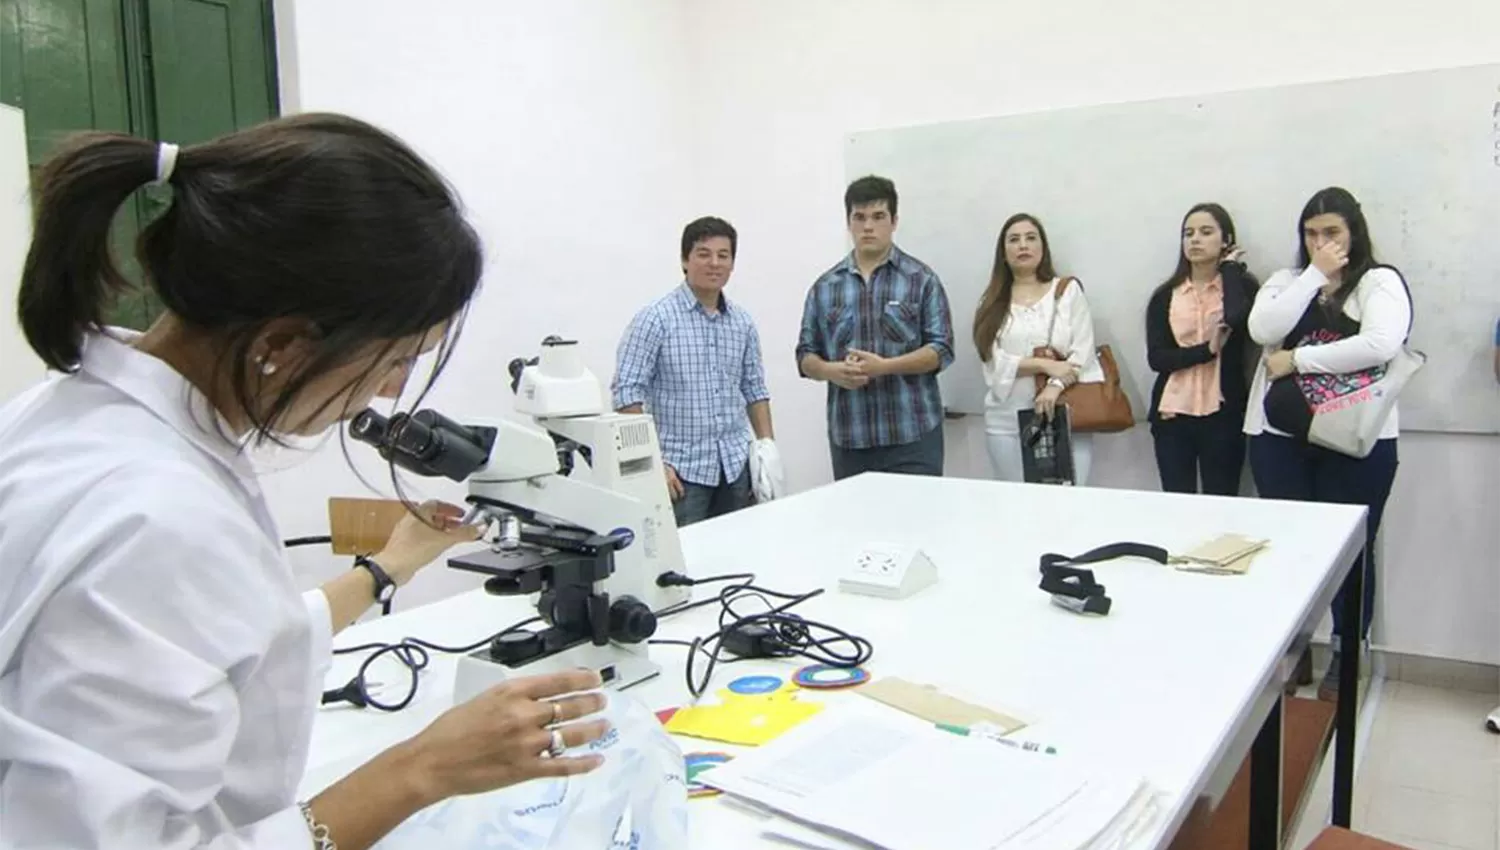 La Universidad de San Pablo-T propone conocer en persona cómo es ser un médico